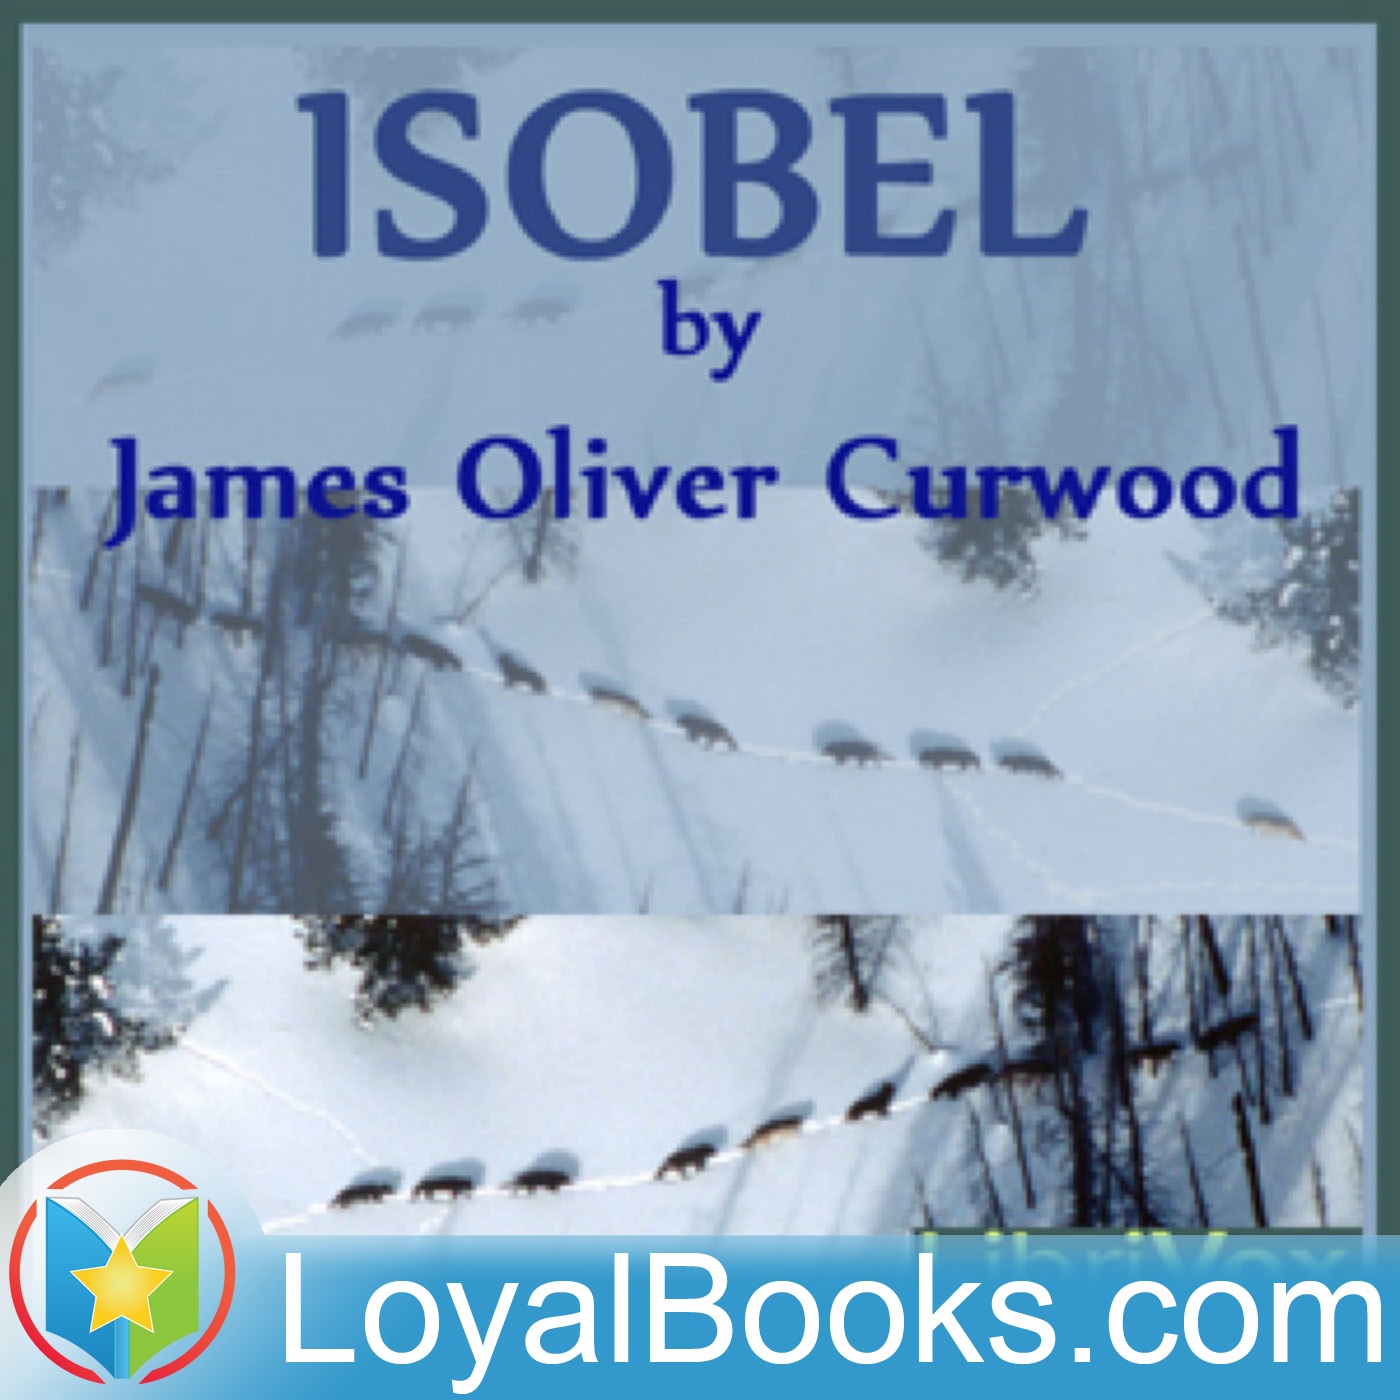 Isobel by James Oliver Curwood